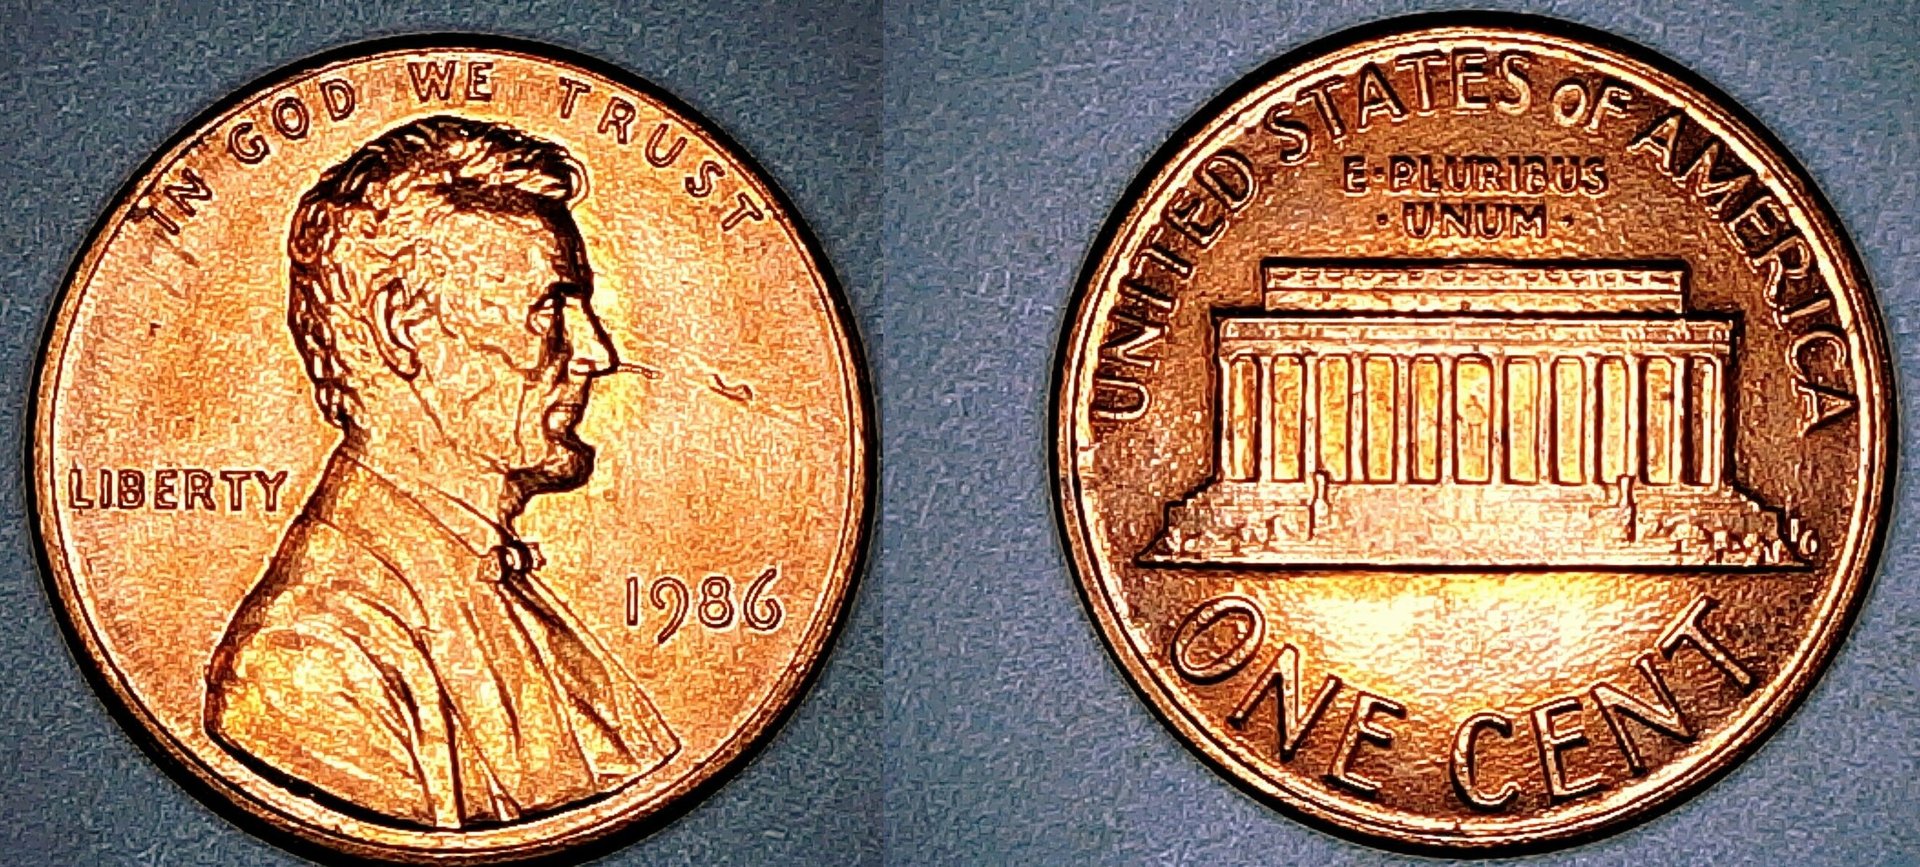 1986- Lincoln Cent Bu Mint Error Obv Planchet  Nose Gas Bubbles.jpg